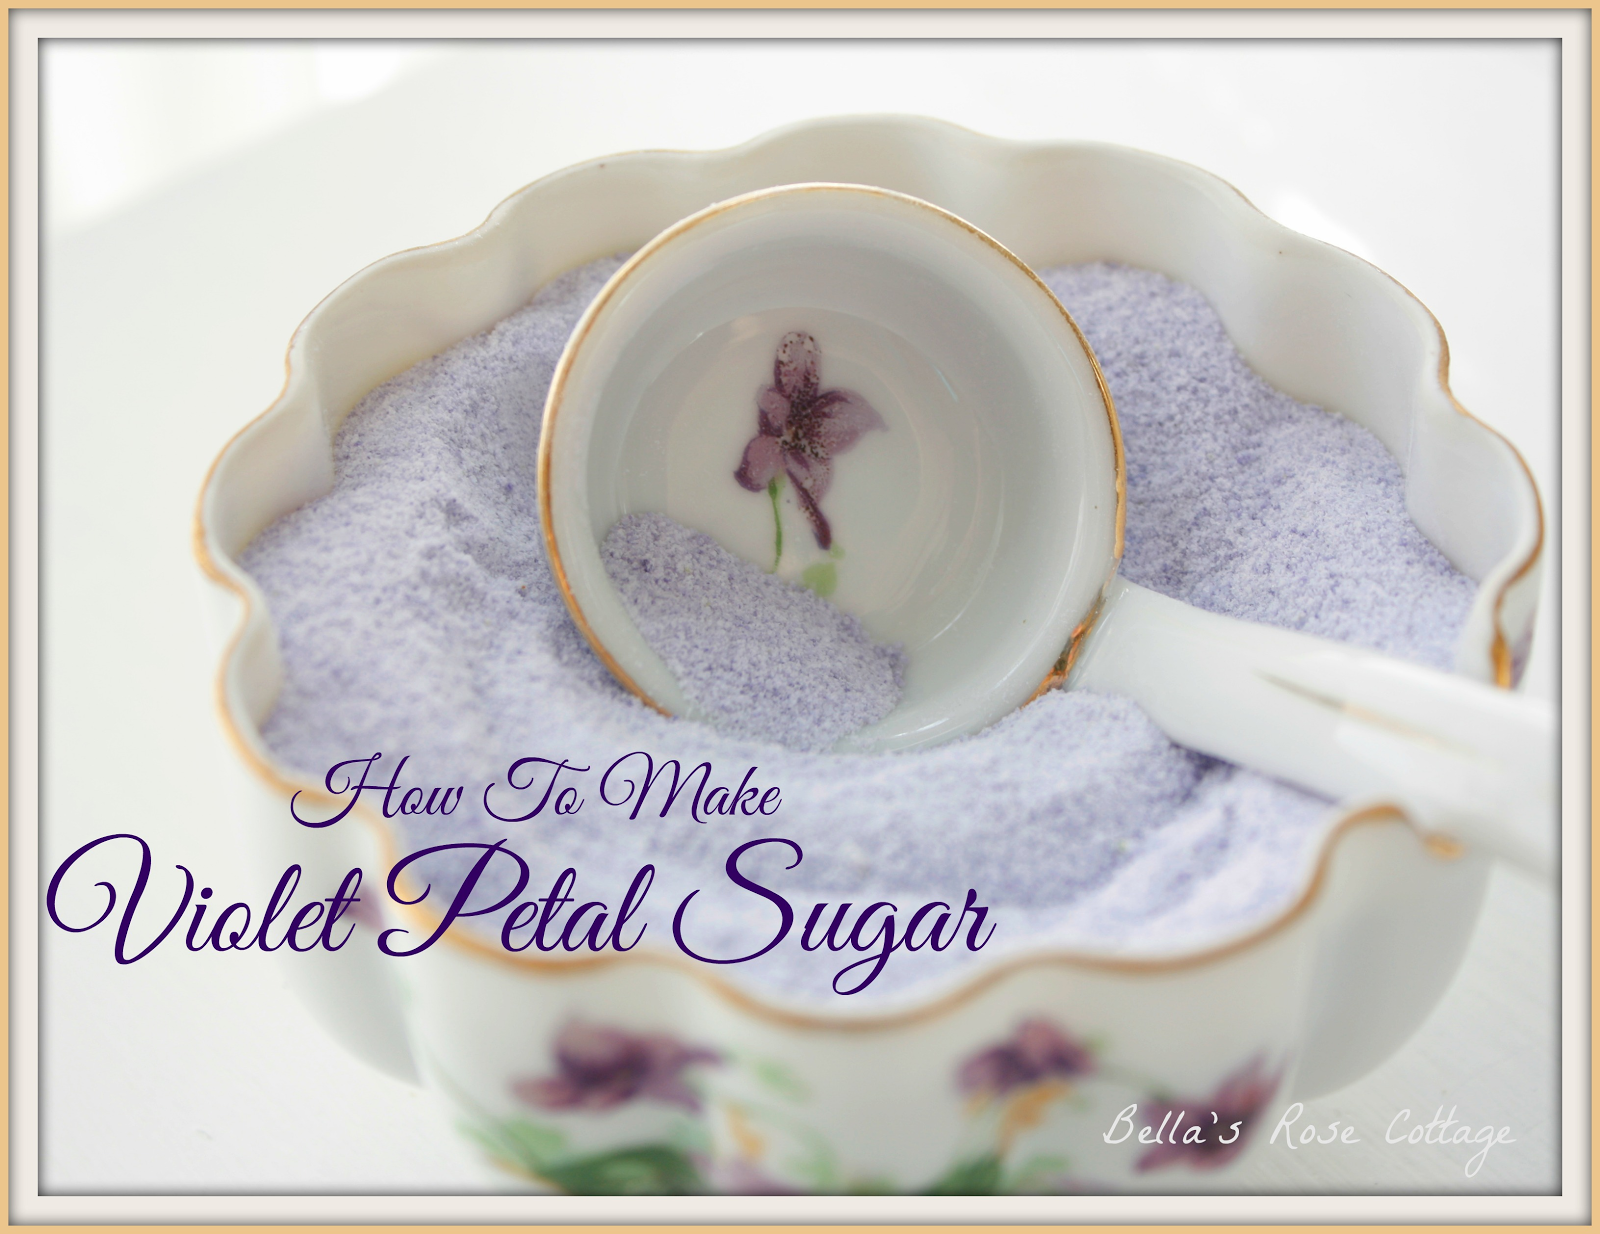 Violet Petal Sugar